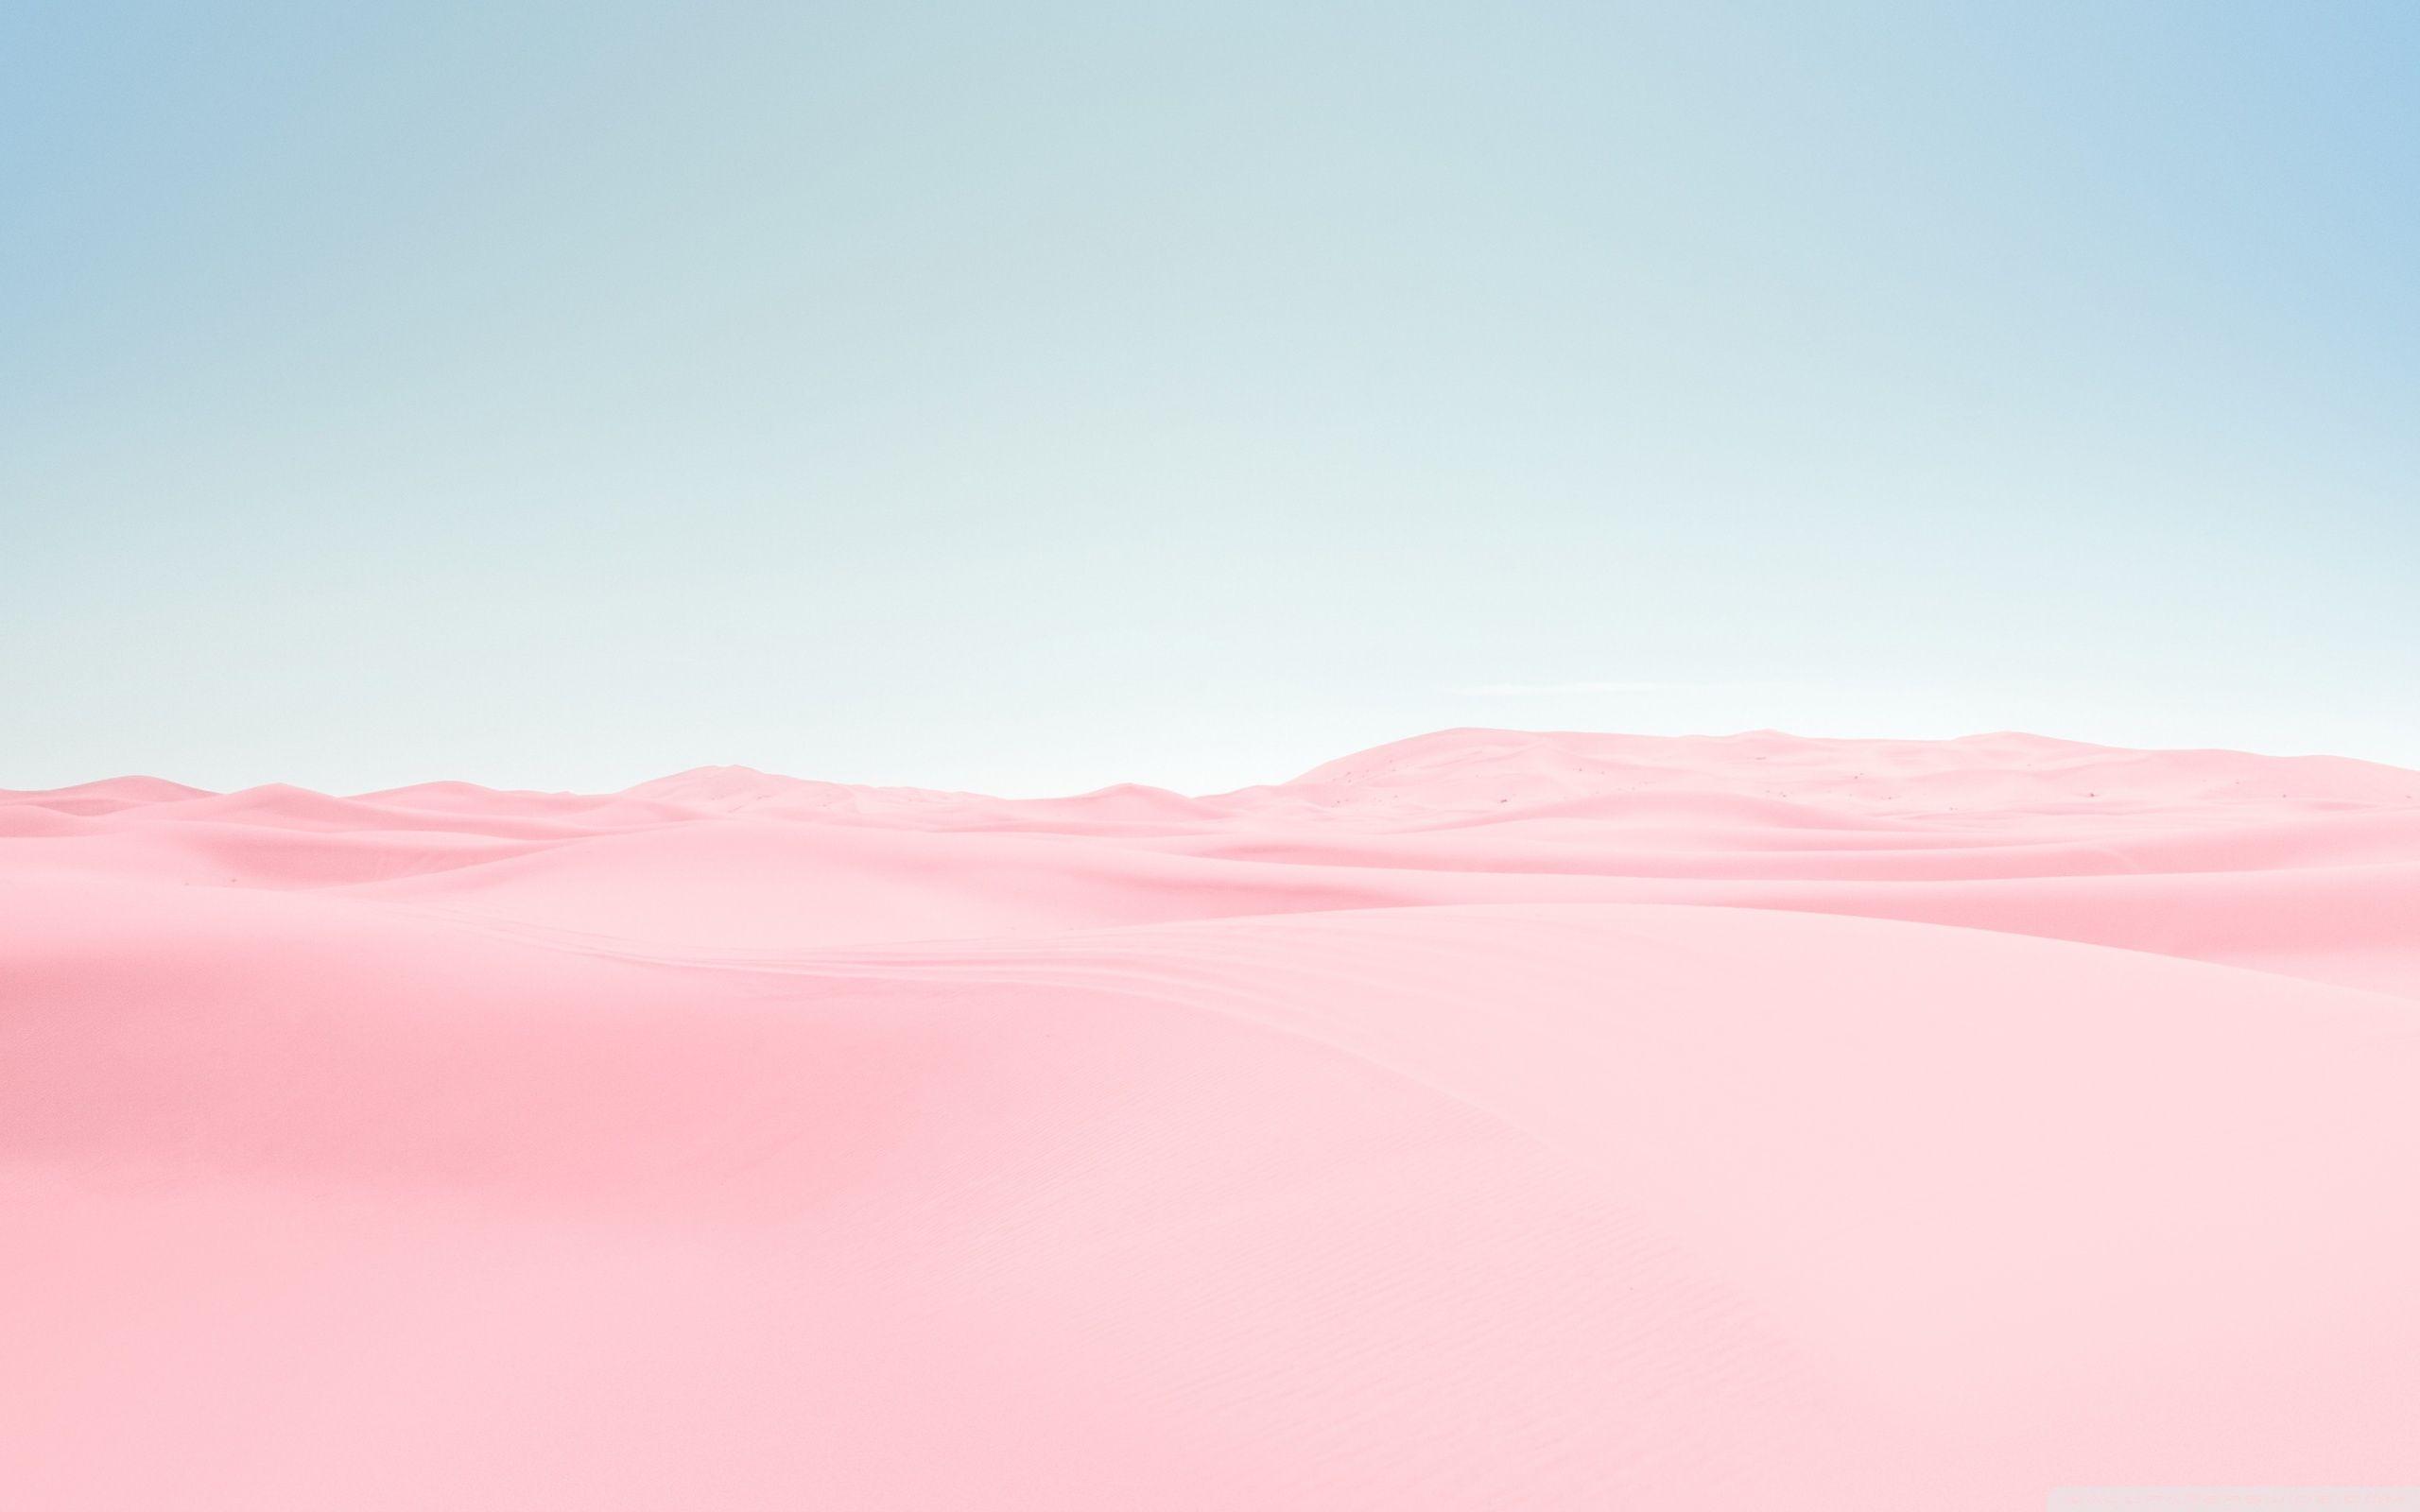 Hình nền sa mạc hồng 4k: Tạo ấn tượng bất tận với hình nền sa mạc hồng 4k đầy quyến rũ, mang đến cho người xem một khoảnh khắc thật đặc biệt giữa cát trắng và sắc hồng tươi sáng. Tải ngay hình nền này để trải nghiệm công nghệ tiên tiến nhất với độ phân giải 4K cùng với màu hồng quyến rũ sẽ giúp cho màn hình của bạn trở nên bắt mắt và nổi bật.